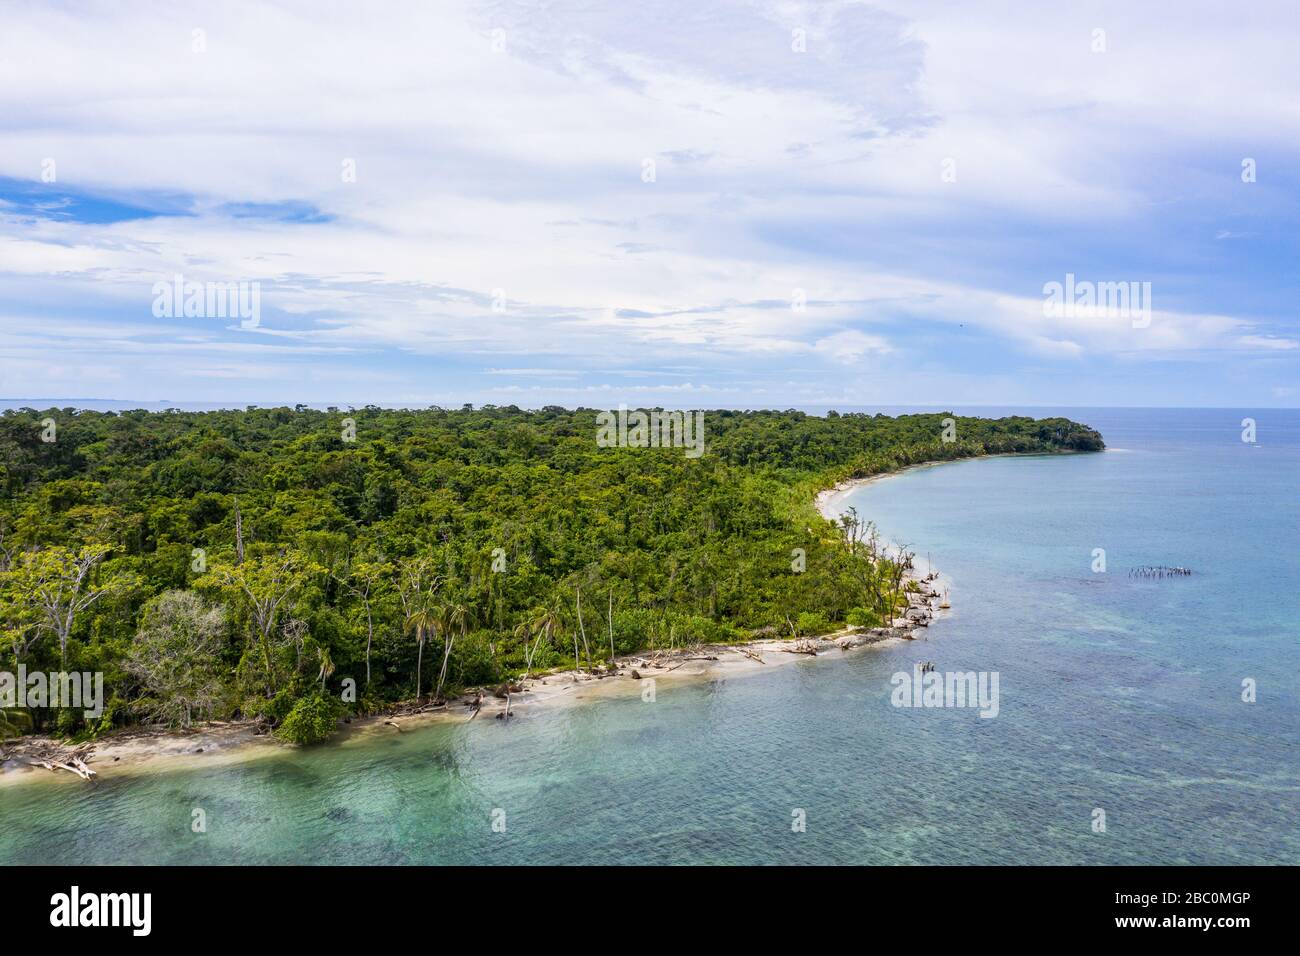 Vue aérienne du parc national de Cahuita le long de la côte sud des Caraïbes du Costa Rica. Banque D'Images